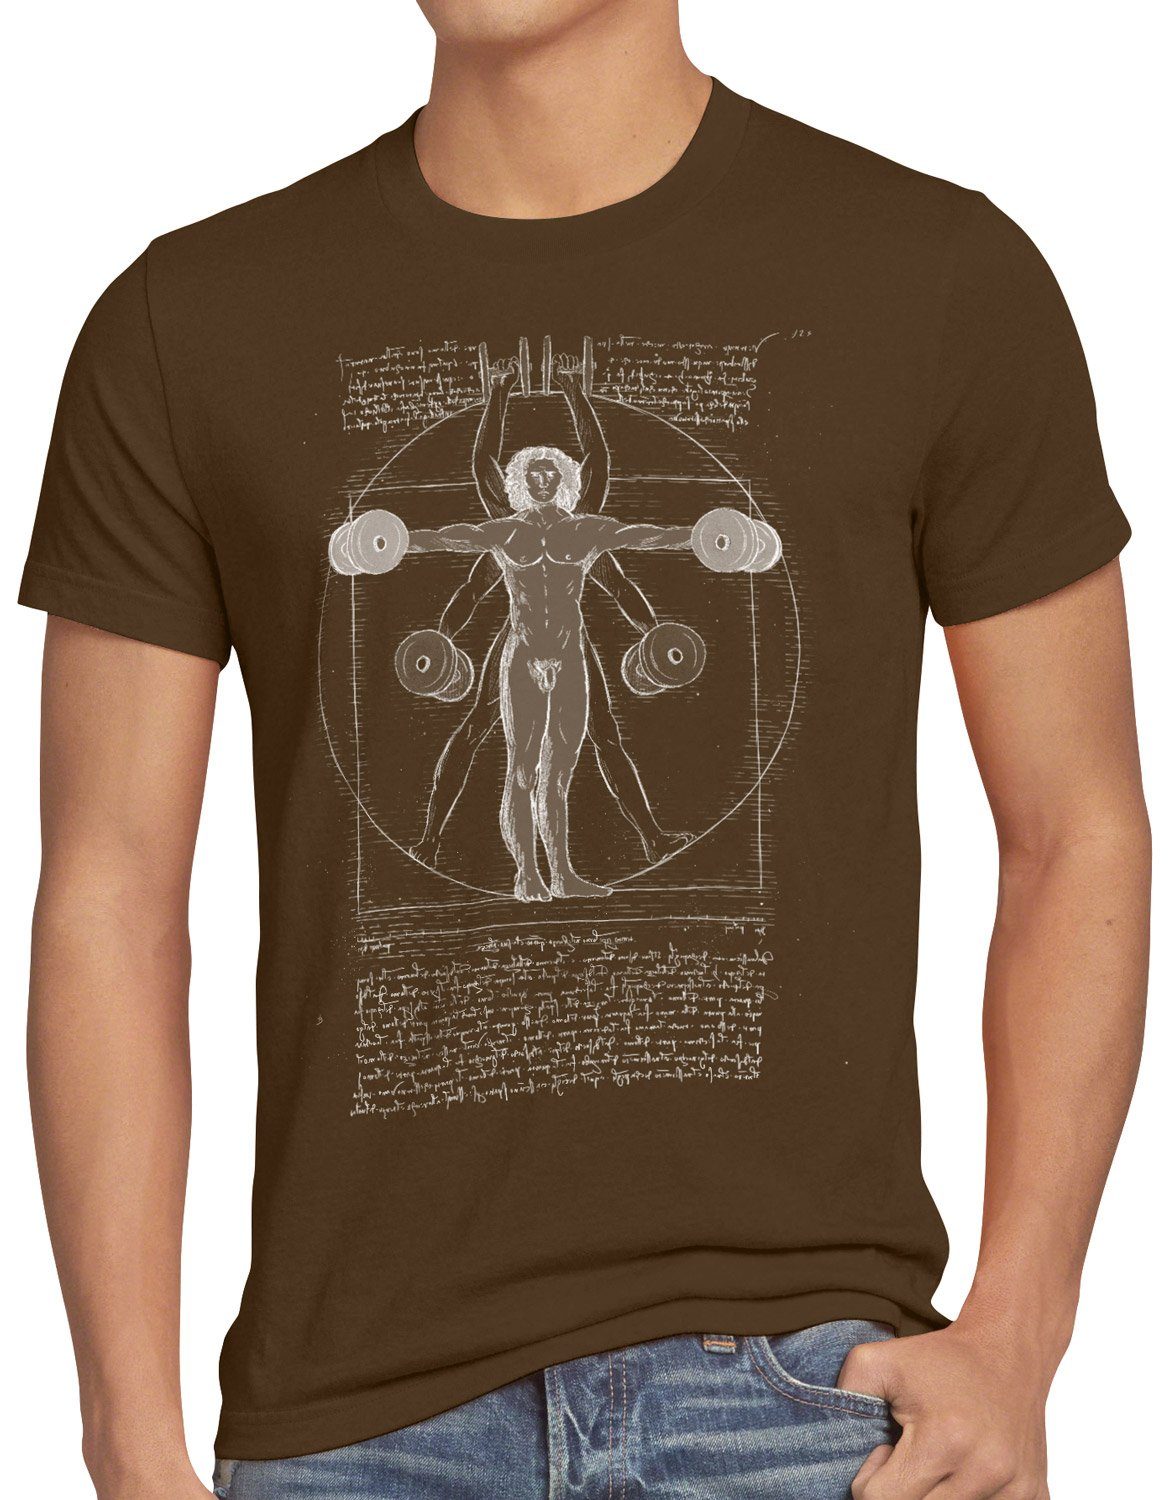 style3 Print-Shirt Herren T-Shirt Vitruvianischer Mensch mit Kurzhantel butterfly rudern training braun | T-Shirts